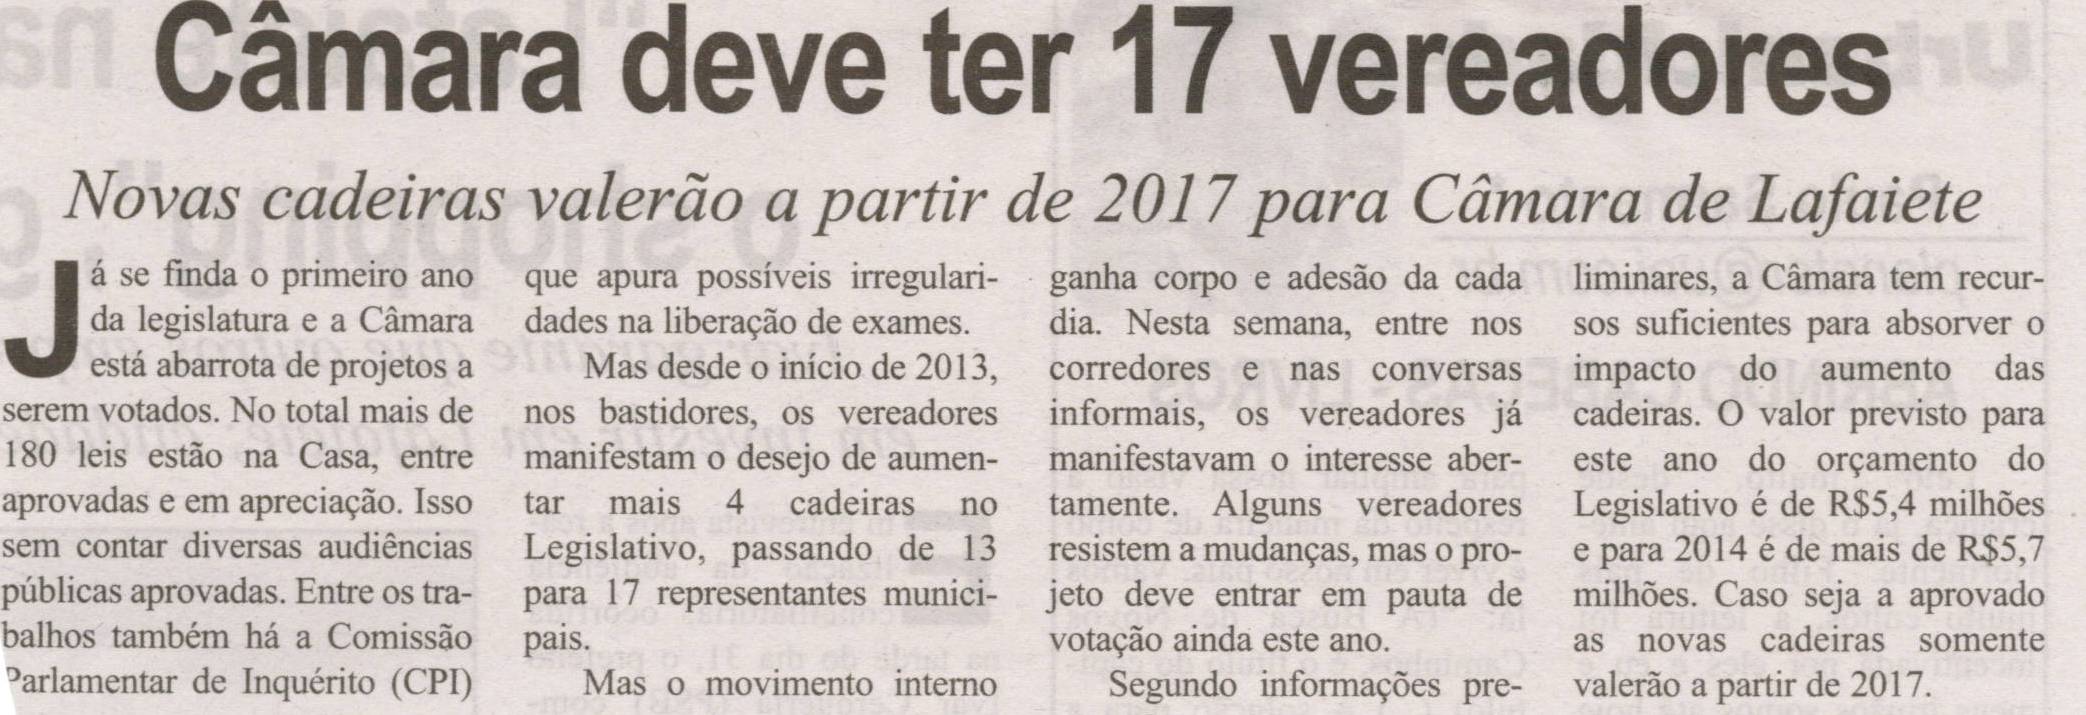 Câmara deve ter 17 vereadores: novas cadeiras valerão a partir de 2017 para a Câmara de Lafaiete. Correio de Minas, Conselheiro Lafaiete, 09 nov. 2013, p. 3.